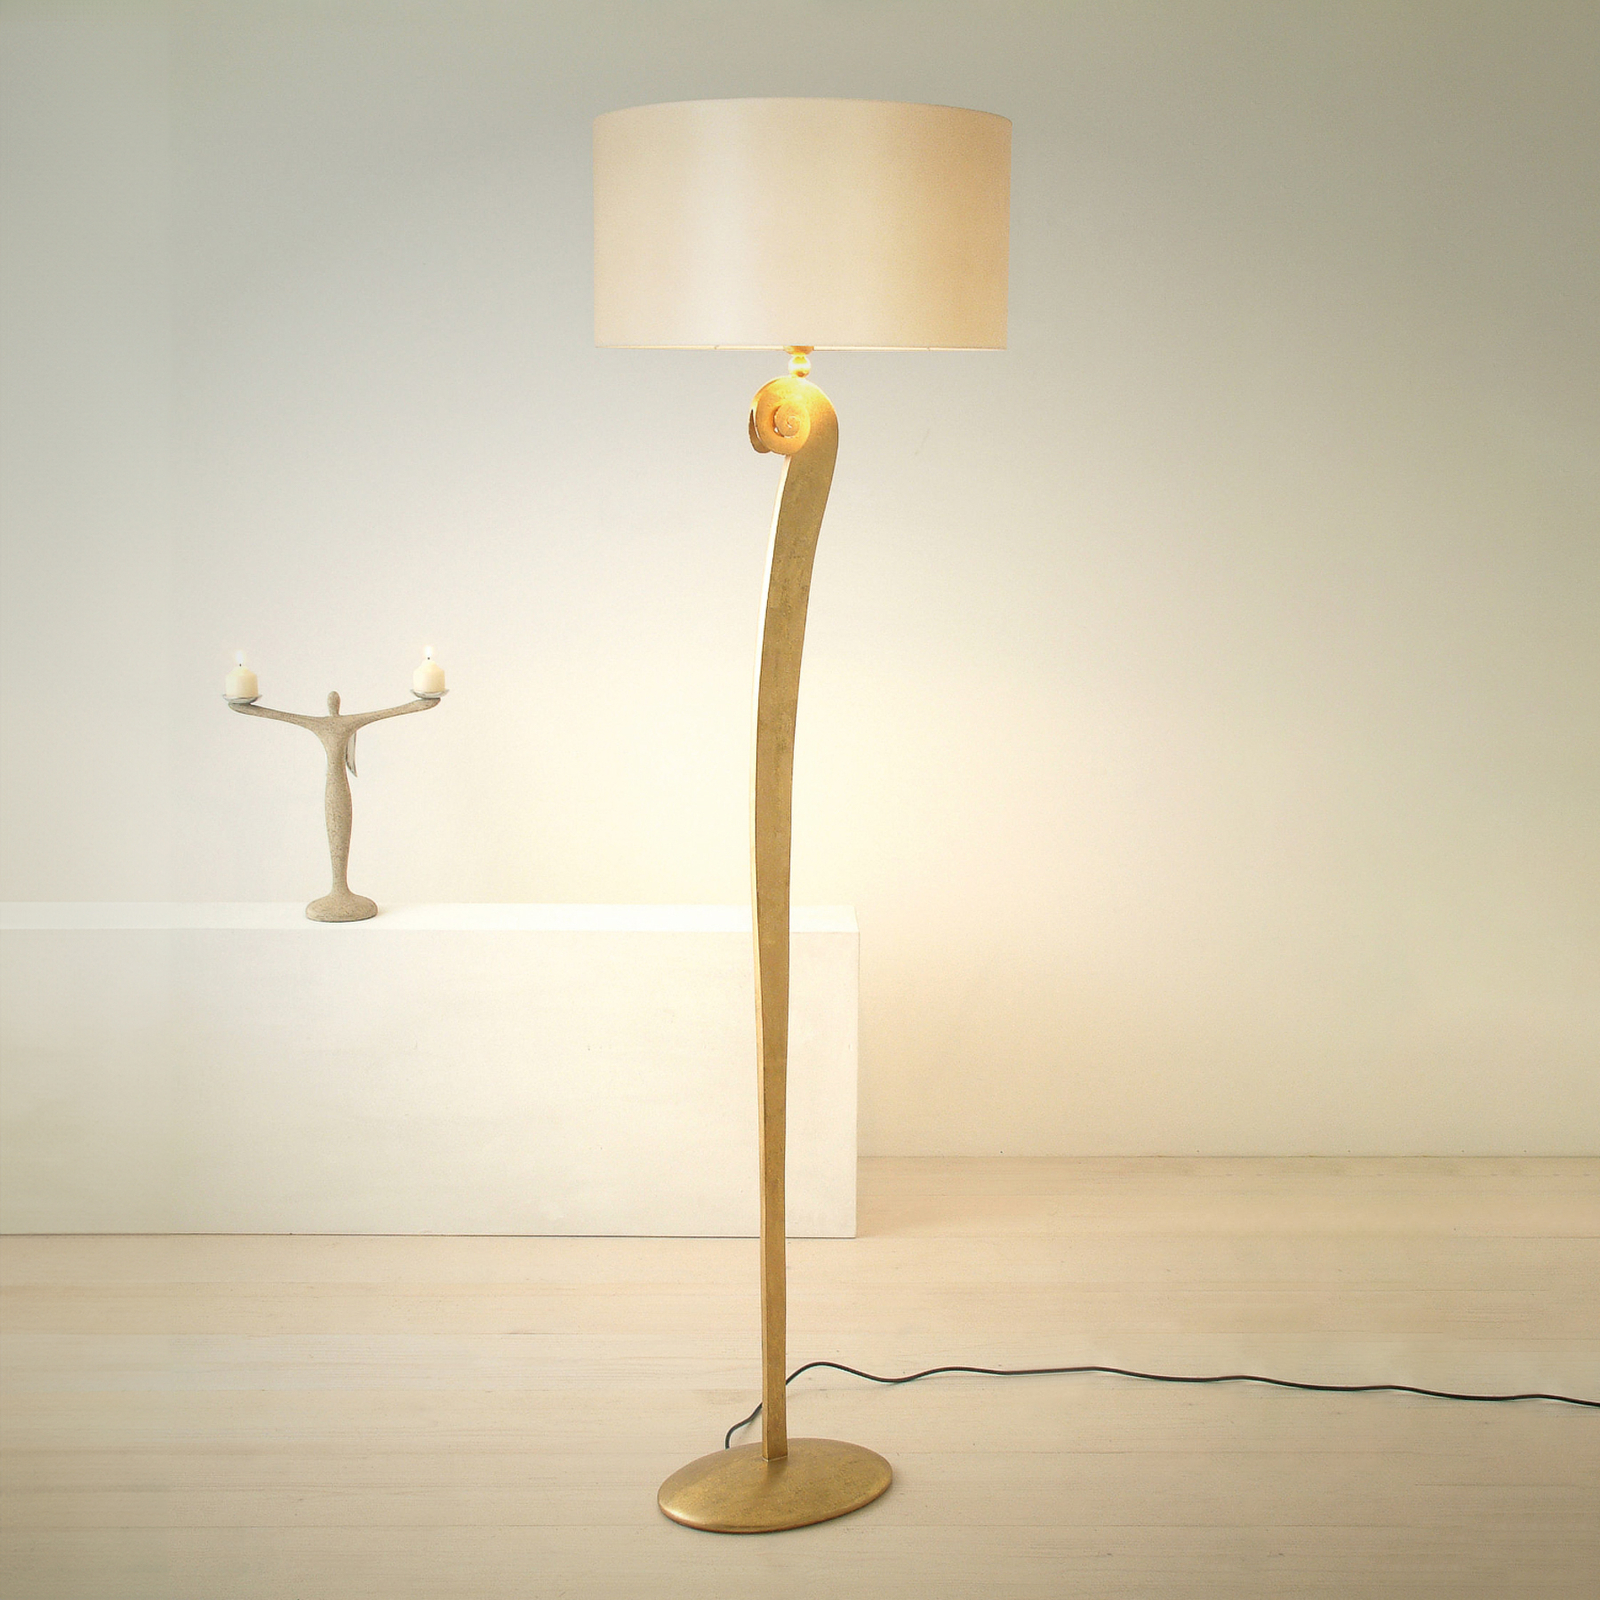 Lampa stojąca Lino, kolor złoty/ecru, wysokość 160 cm, żelazo